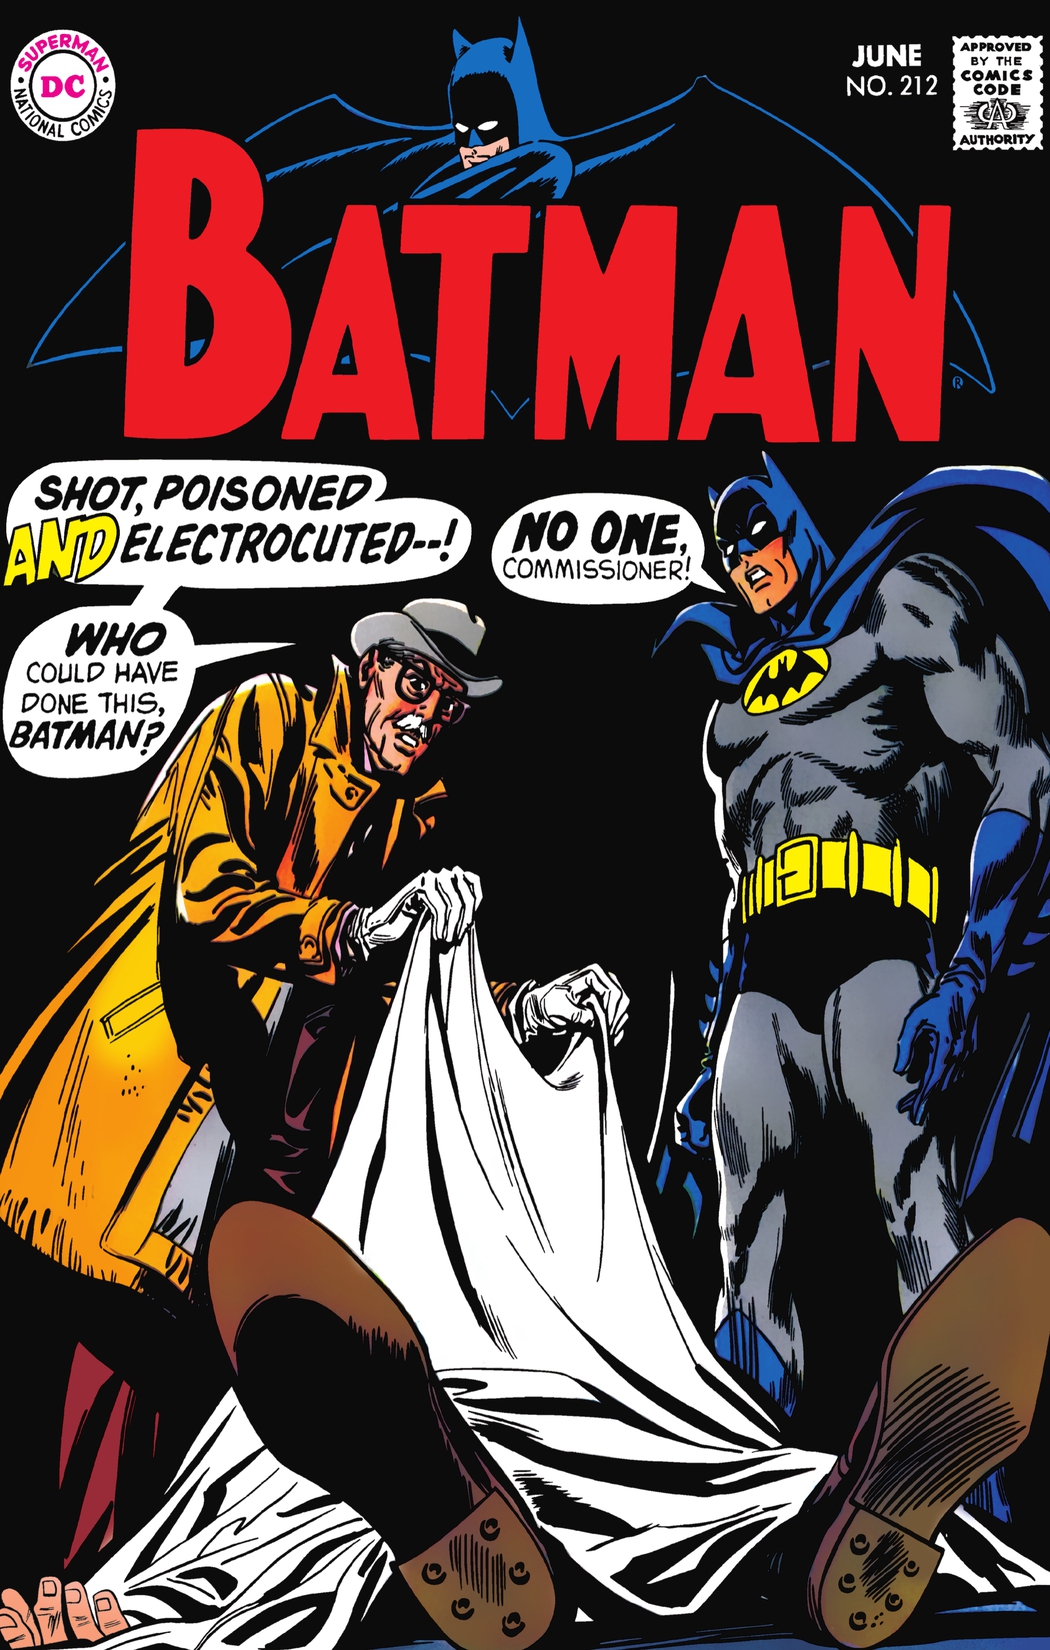 Batman (1940-2011) #212 preview images